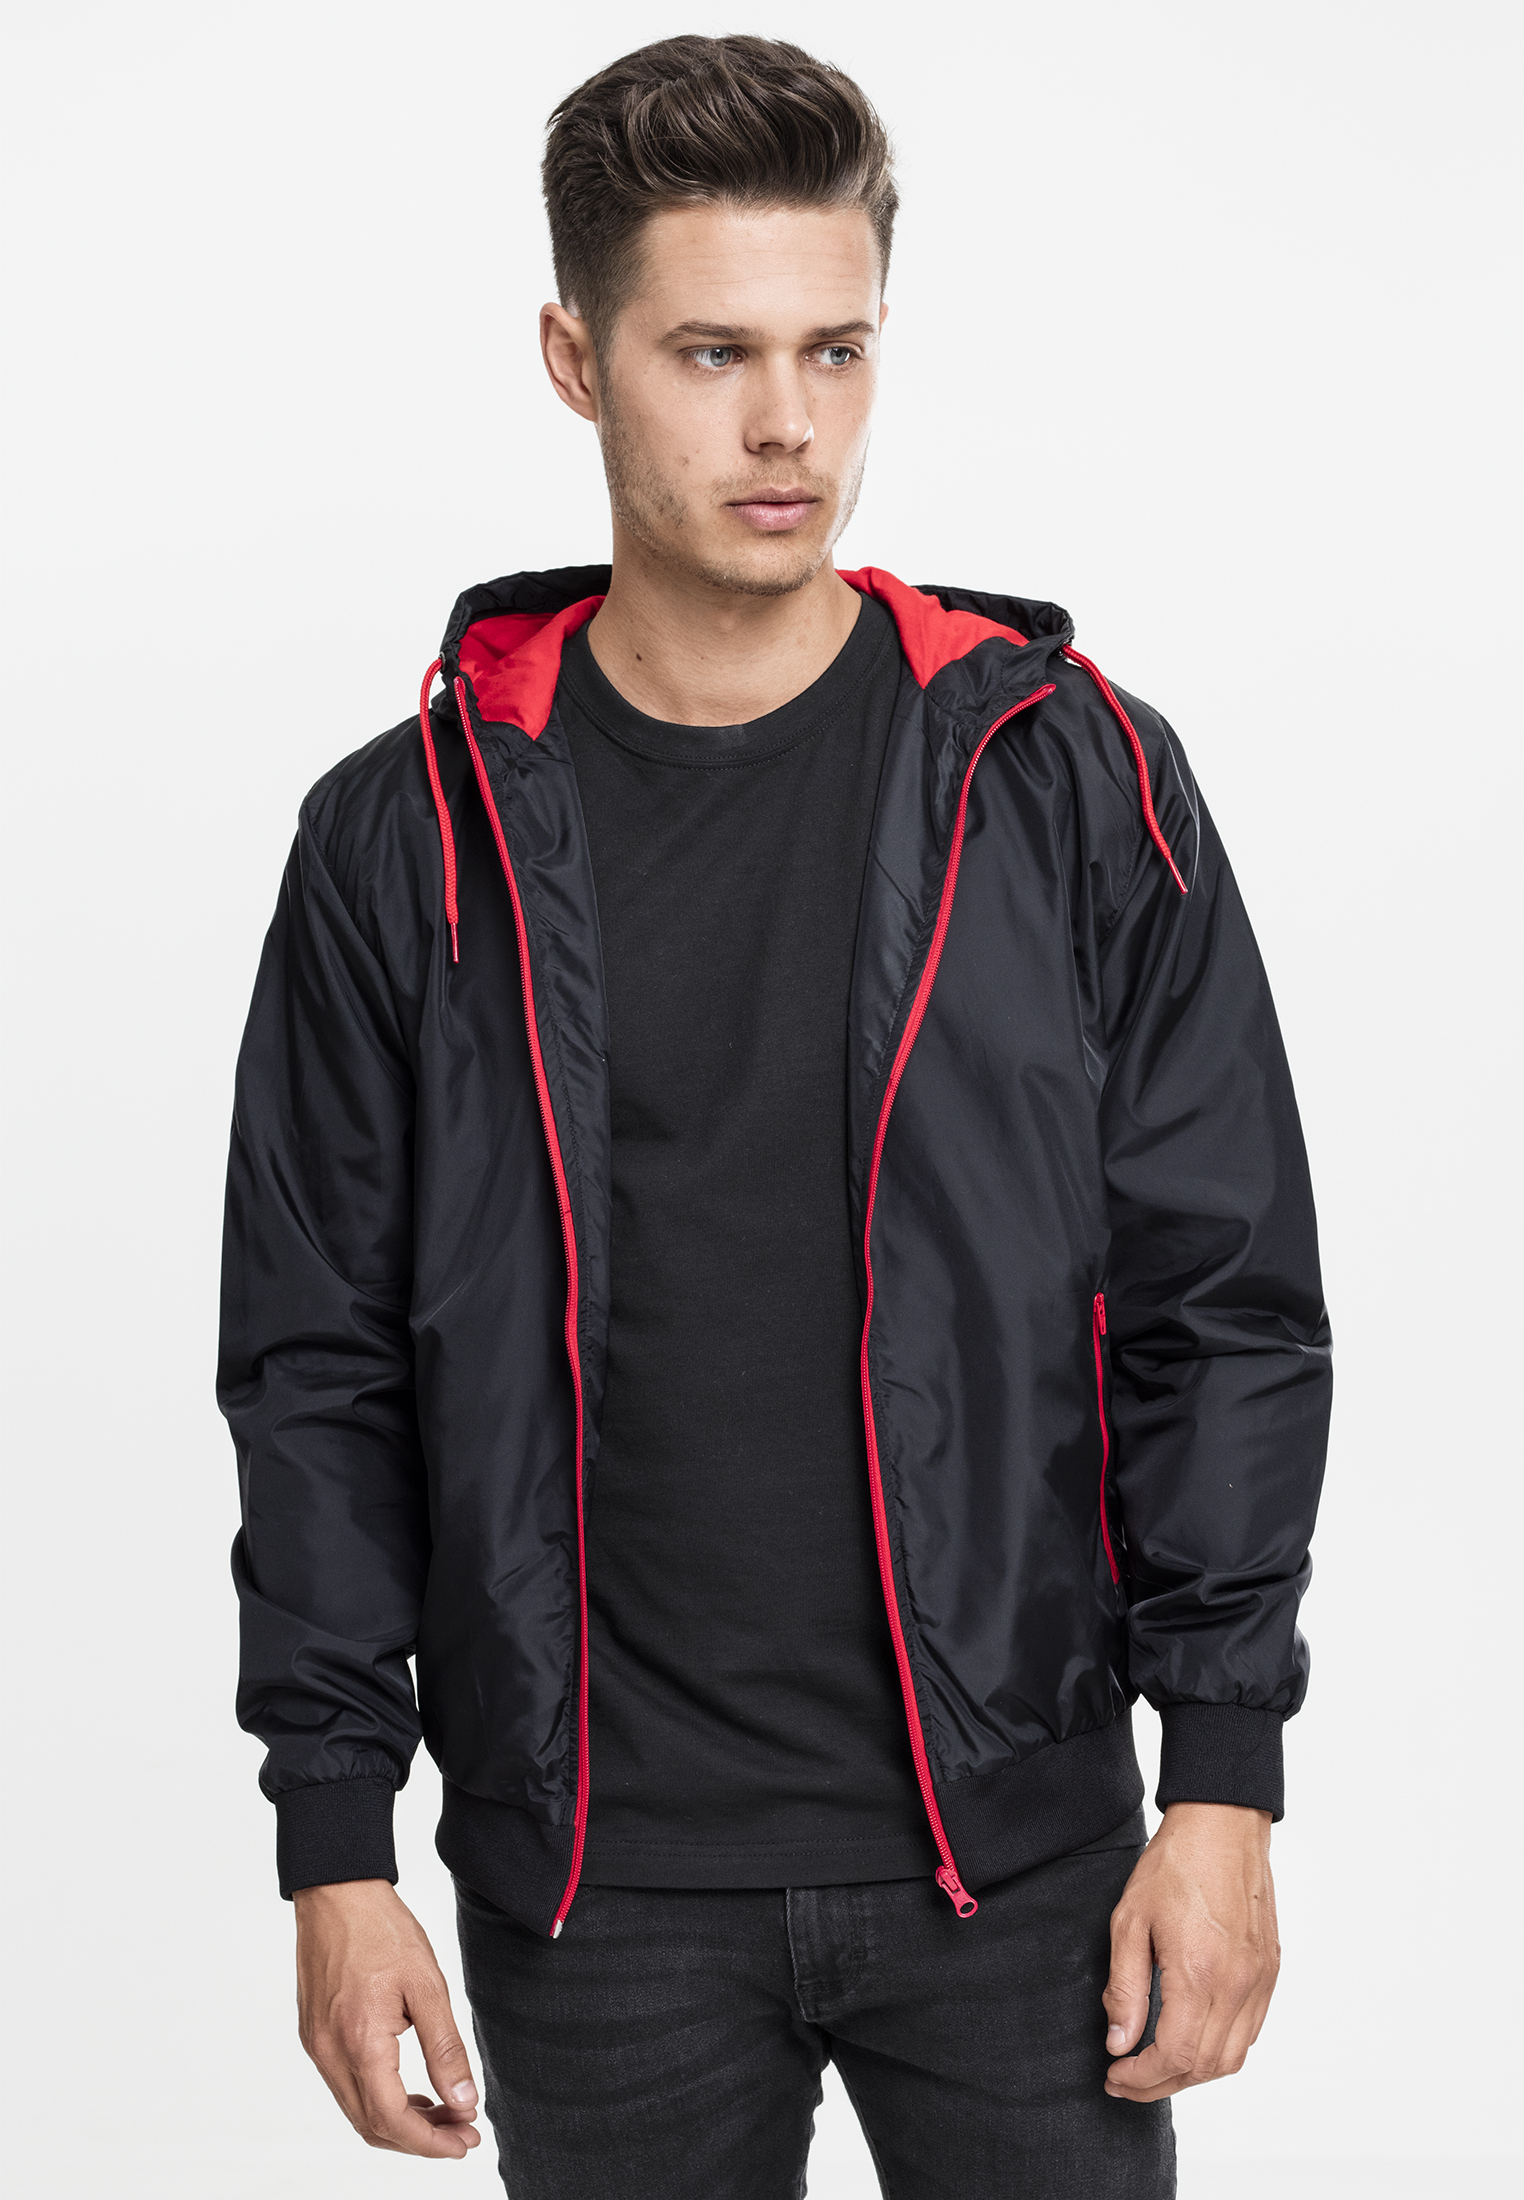 Leichte Jacken Contrast Windrunner in Farbe blk/red